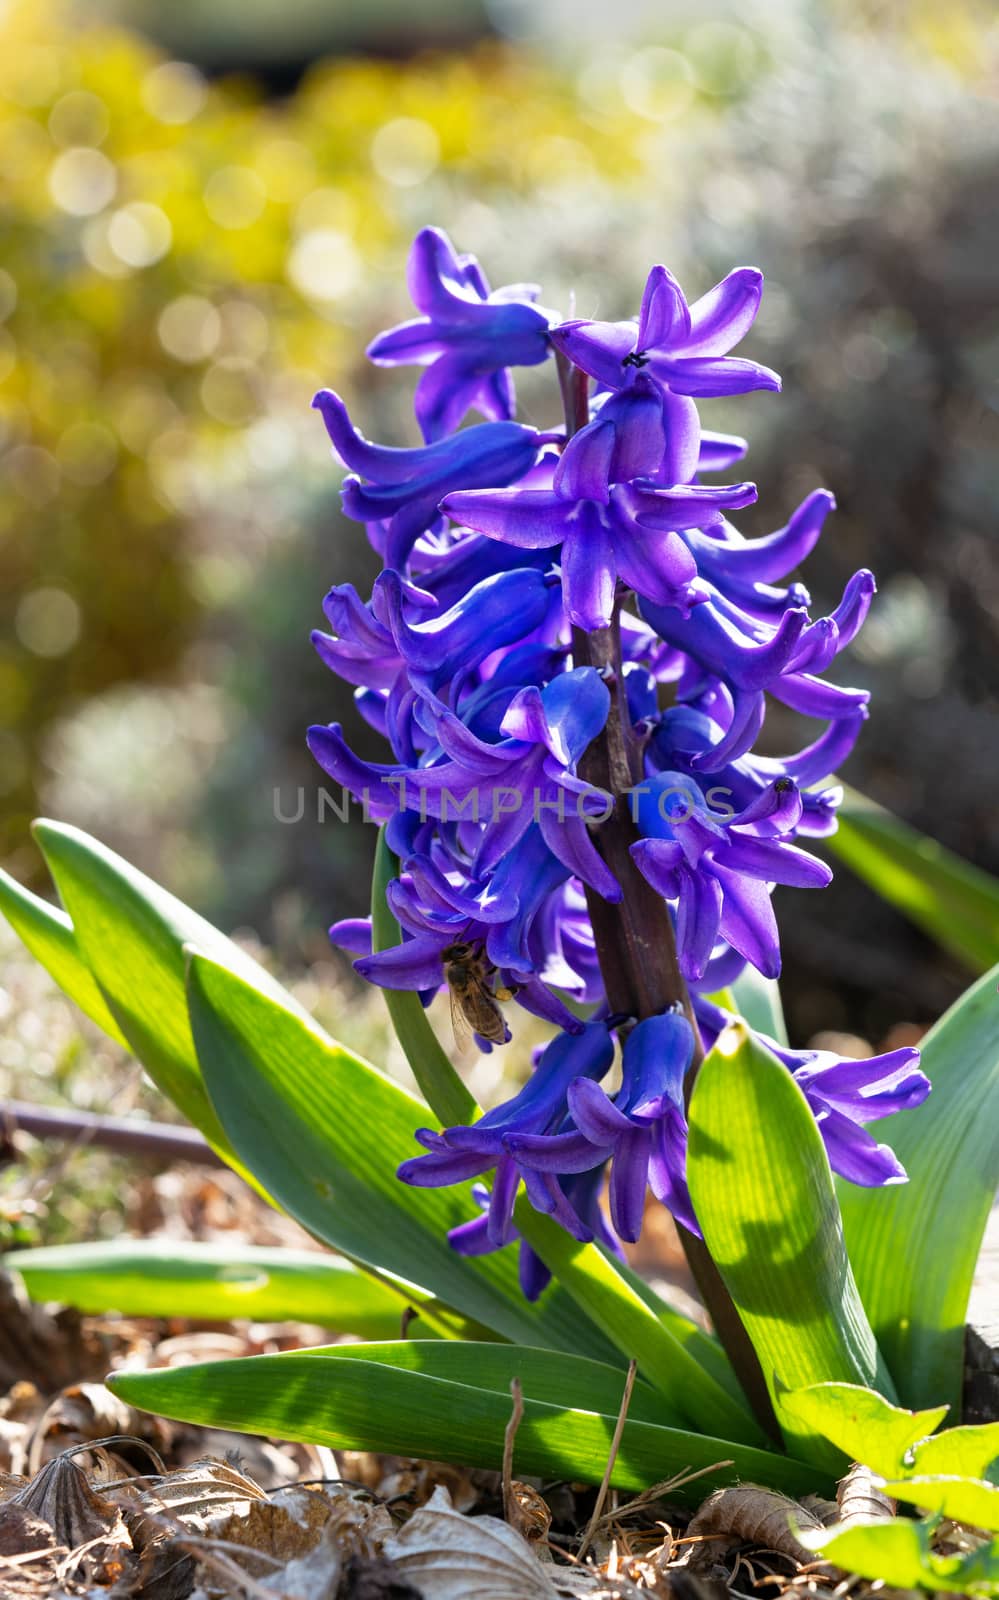 Common Hyacinth (Hyacinthus orientalis), flowers of springtime